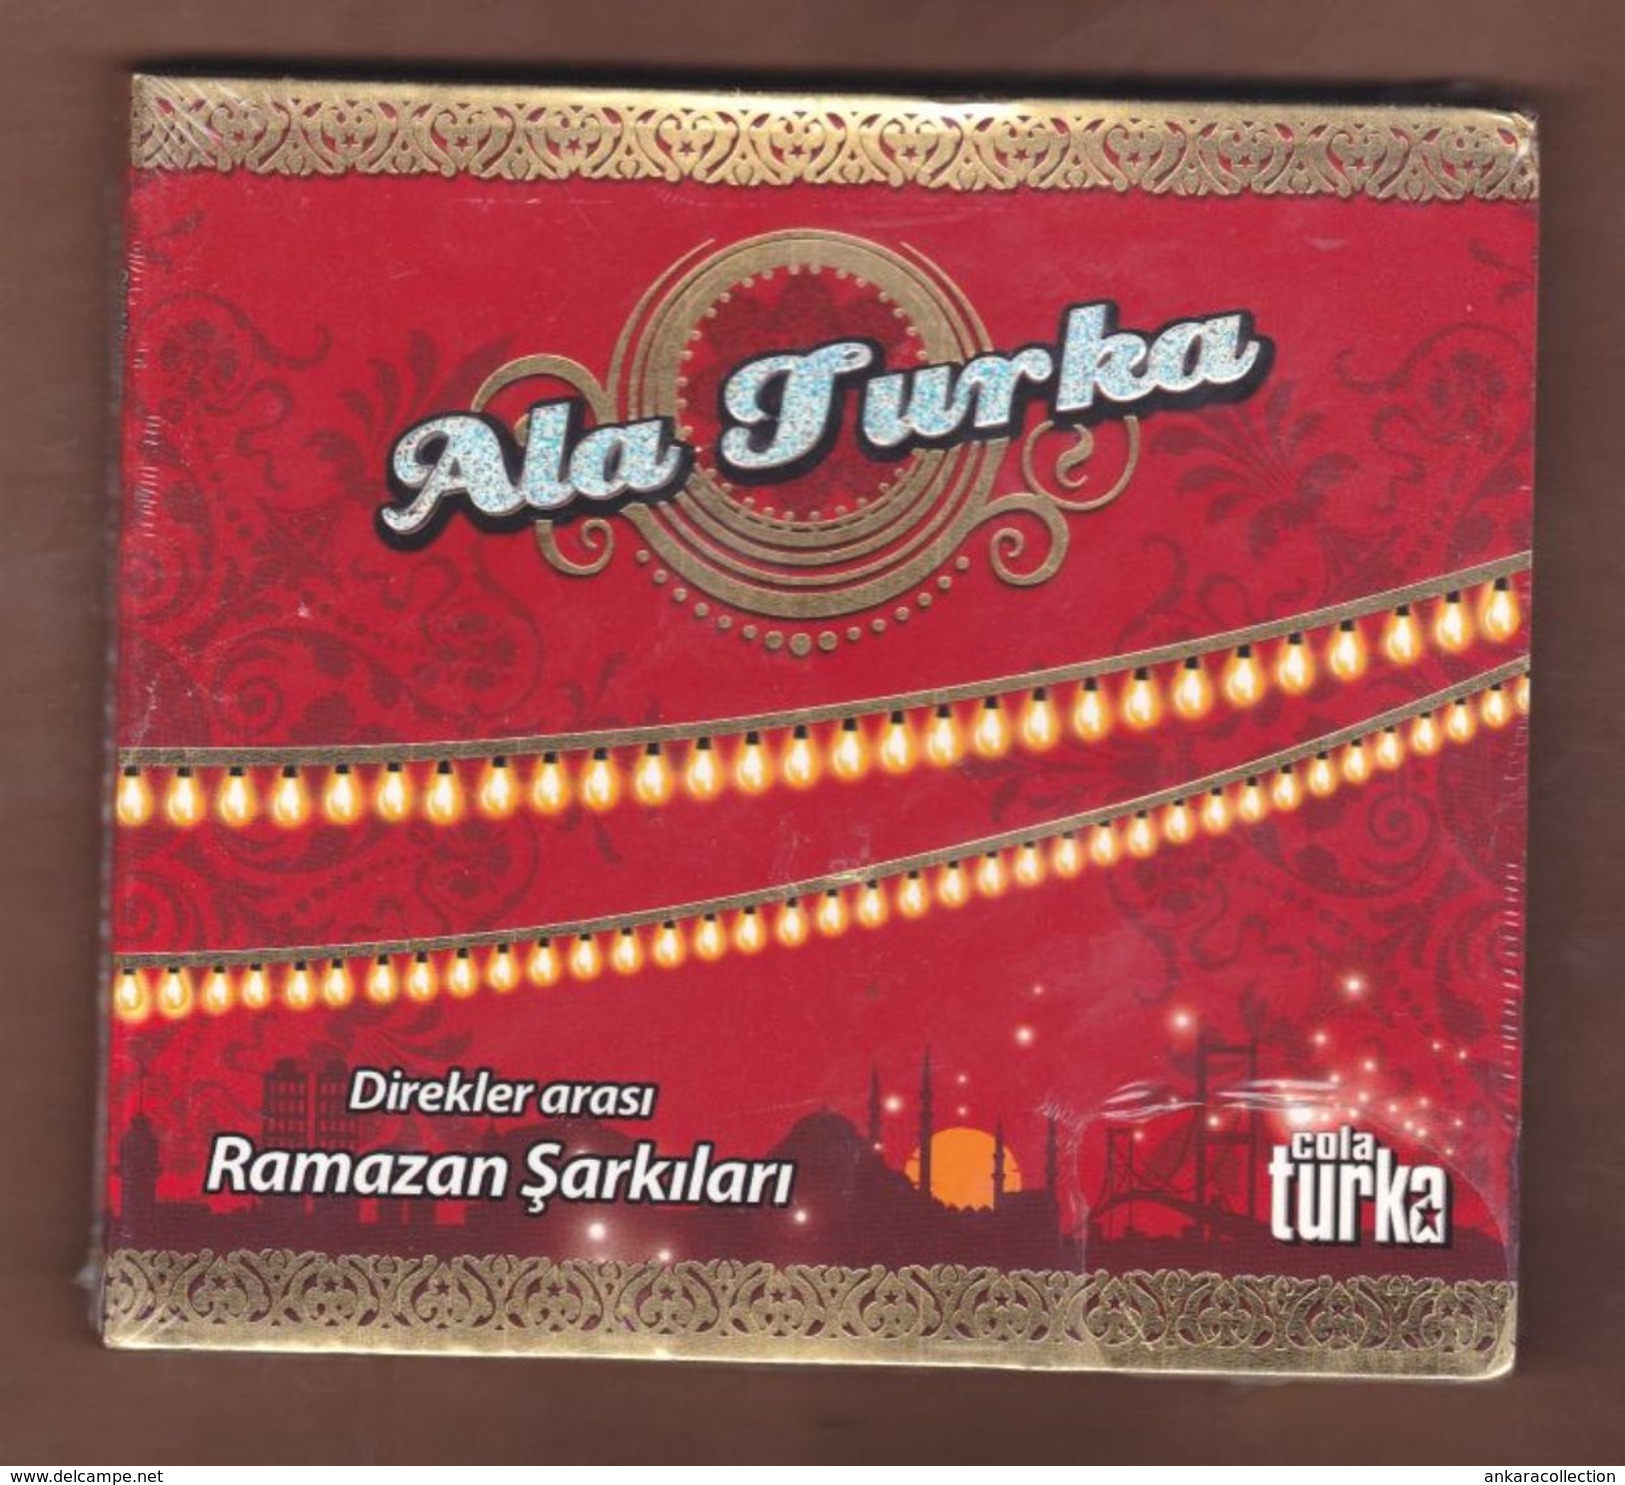 AC - Cola Turka Ala Turka Direkler Arası Ramazan şarkıları BRAND NEW TURKISH MUSIC CD - Wereldmuziek